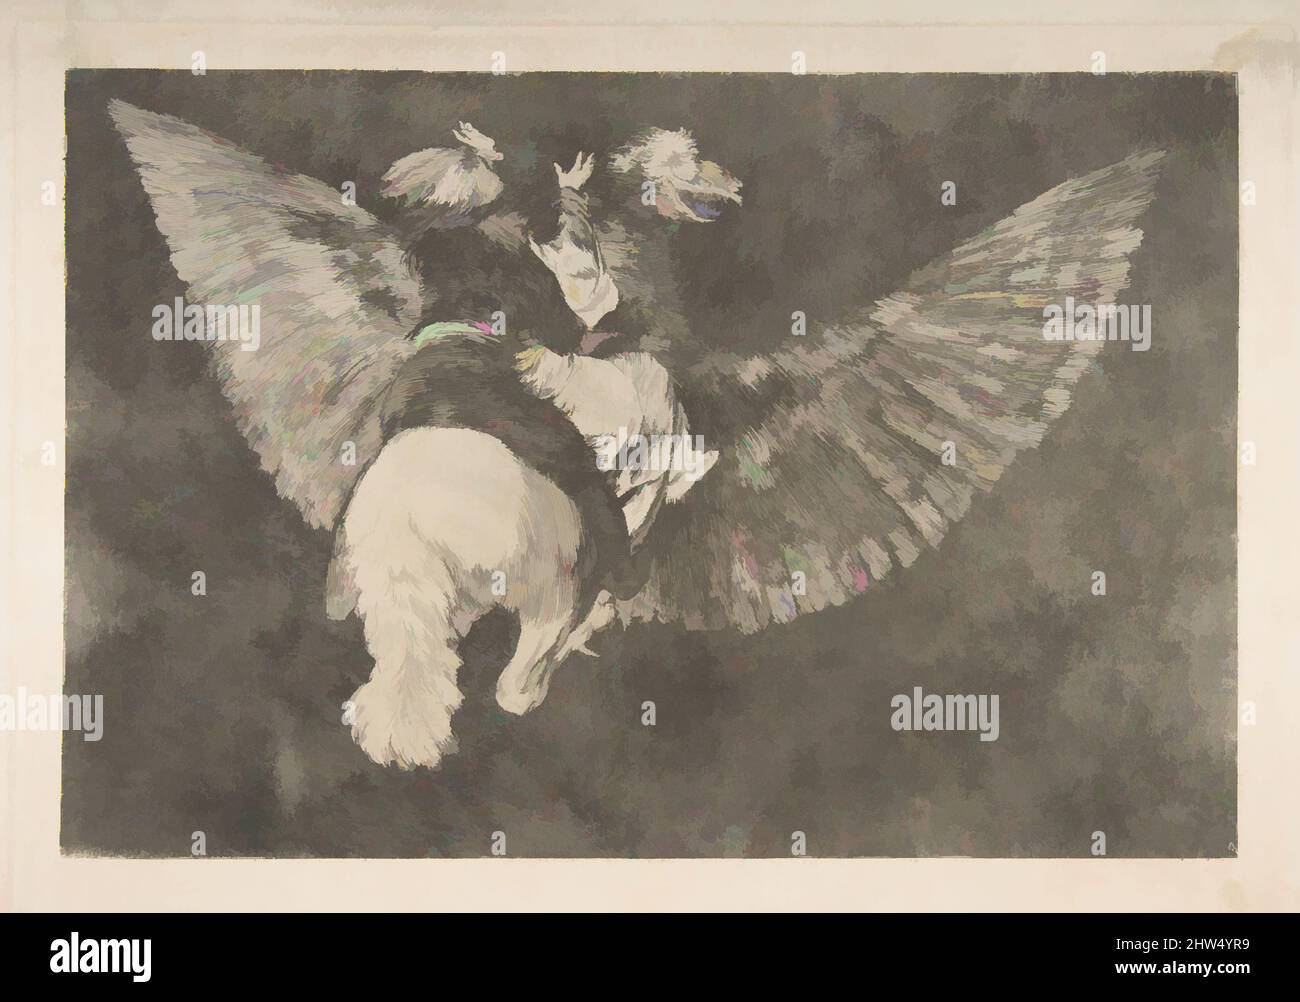 Arte ispirata al piatto 5 dei 'Disparates': Flying Folly, ca. 1816–23 (stampa privata CA4), incisione e acquatinta, piastra: 9 5/8 x 13 7/8 pollici (24,5 x 35,2 cm), Prints, Goya (Francisco de Goya y Lucientes) (spagnolo, Fuendetodos 1746–1828 Bordeaux, opere classiche modernizzate da Artotop con un tuffo di modernità. Forme, colore e valore, impatto visivo accattivante sulle emozioni artistiche attraverso la libertà delle opere d'arte in modo contemporaneo. Un messaggio senza tempo che persegue una nuova direzione selvaggiamente creativa. Artisti che si rivolgono al supporto digitale e creano l'NFT Artotop Foto Stock